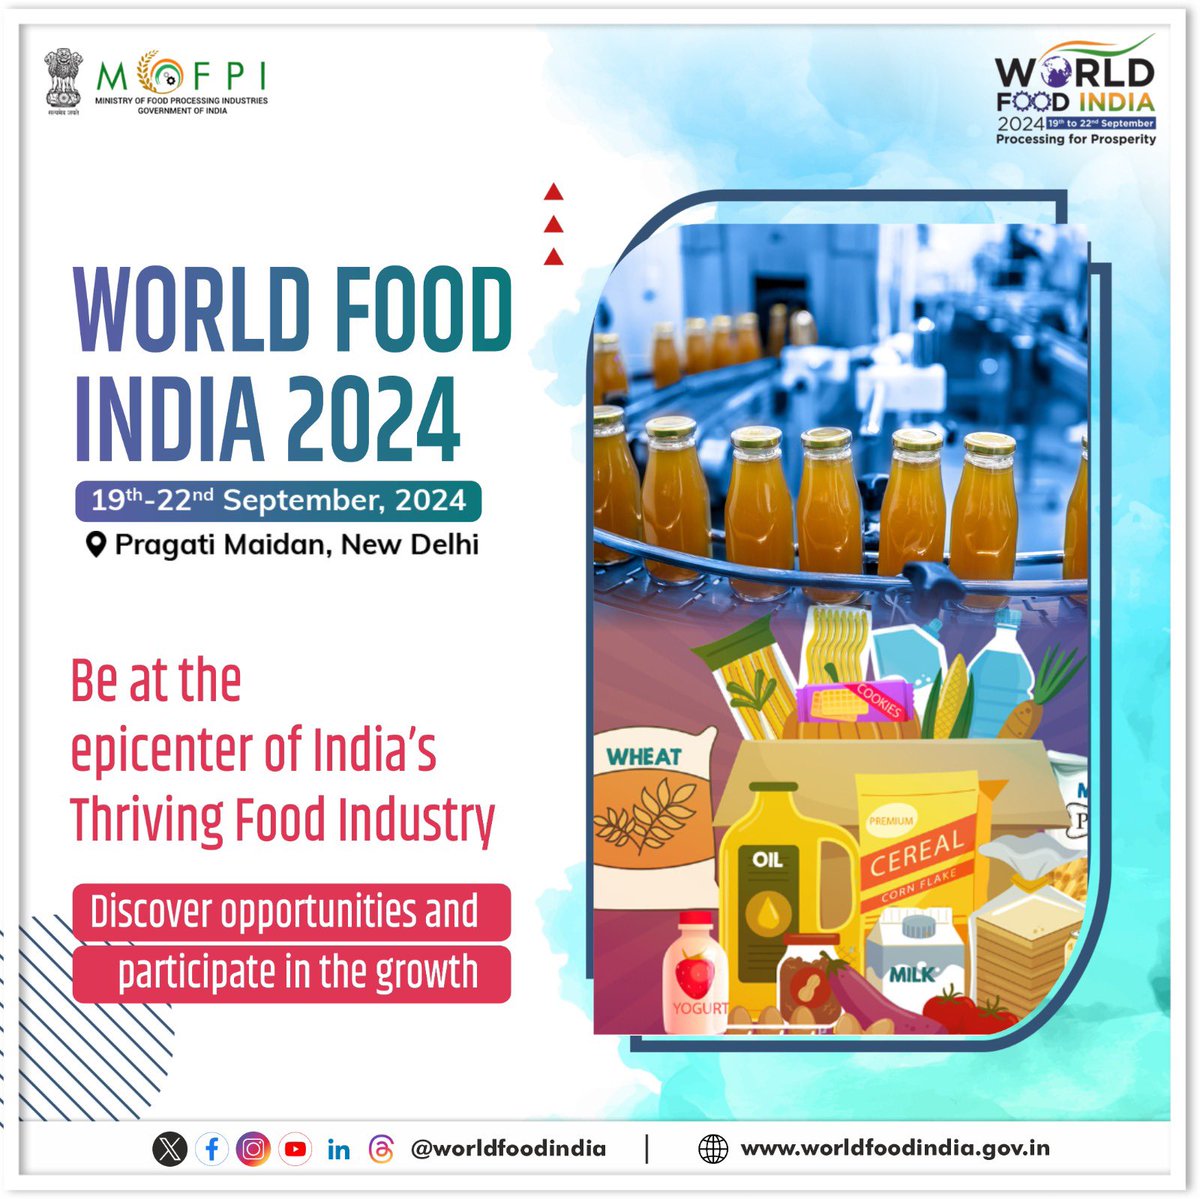 صنعت غذایی در حال شکوفایی هند در #WorldFoodIndia2024 گامی جلوتر خواهد رفت. فرصت های رشد، نوآوری و سرمایه گذاری را کشف کنید. برای جزئیات بیشتر به worldfoodindia.gov.in مراجعه نمایید! #worldfoodindia2024 #investindia